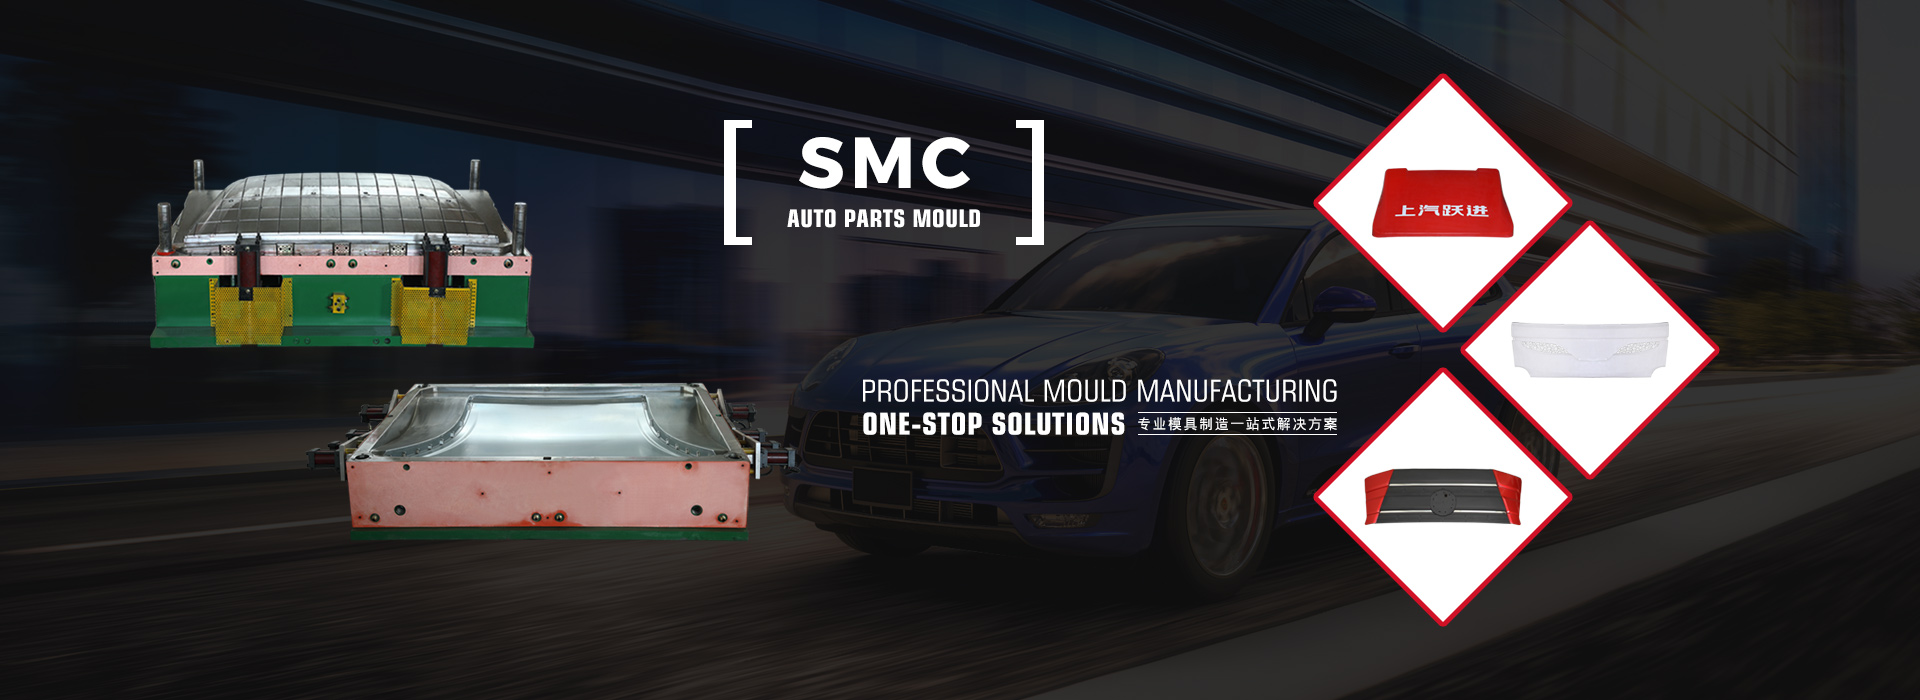 SMC Auto Parts Mould